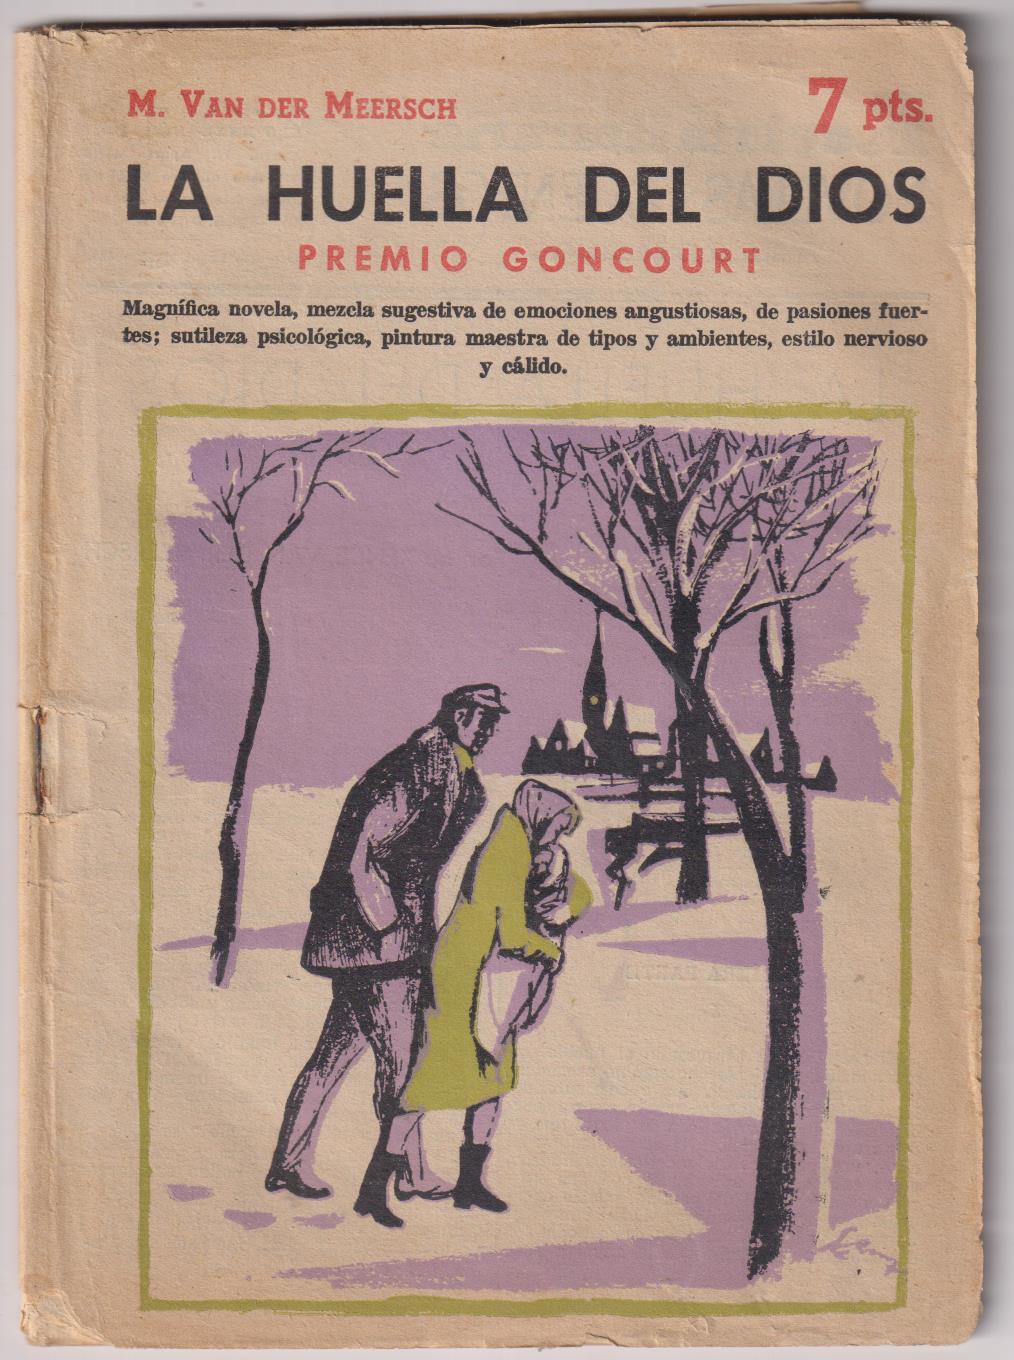 Revista Literaria Novelas y Cuentos nº 1400. M. Van der Meersch. La Huella del Dios, año 1958